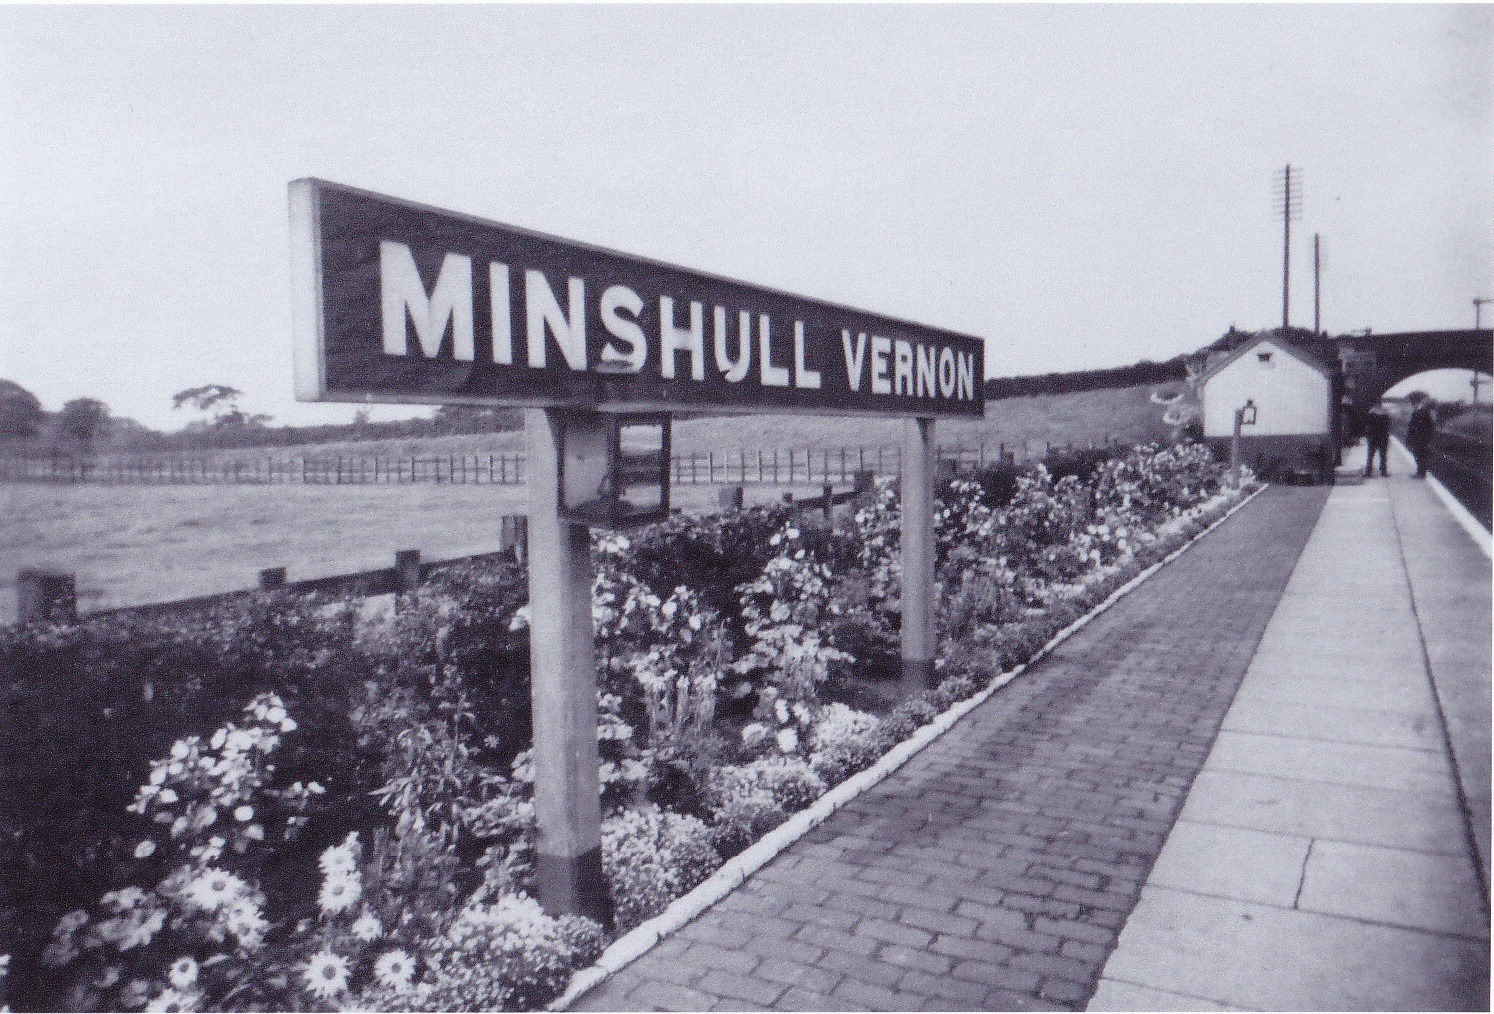 Minshull Vernon station